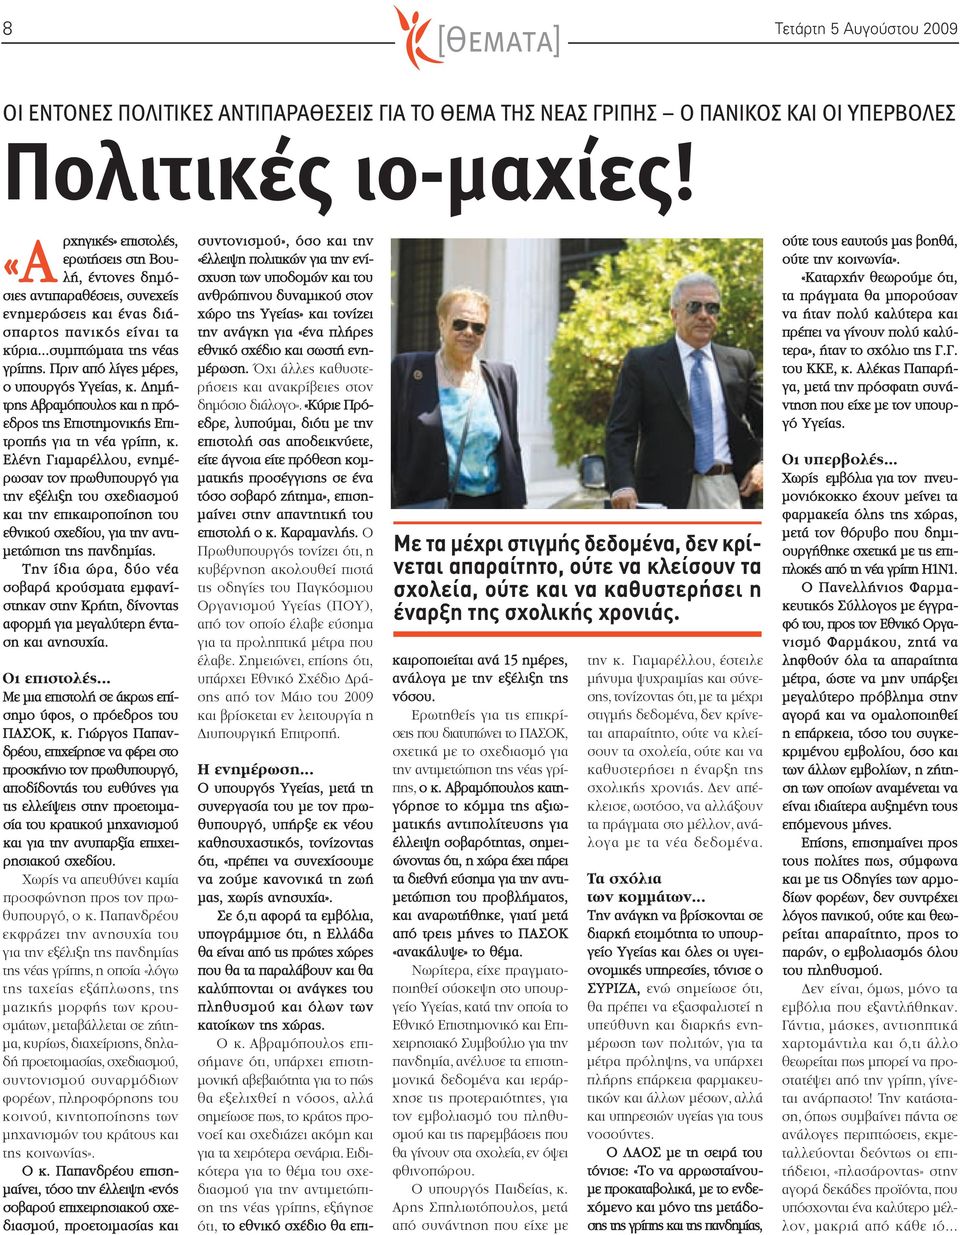 Πριν από λίγες μέρες, ο υπουργός Υγείας, κ. Δημήτρης Αβραμόπουλος και η πρόεδρος της Επιστημονικής Επιτροπής για τη νέα γρίπη, κ.